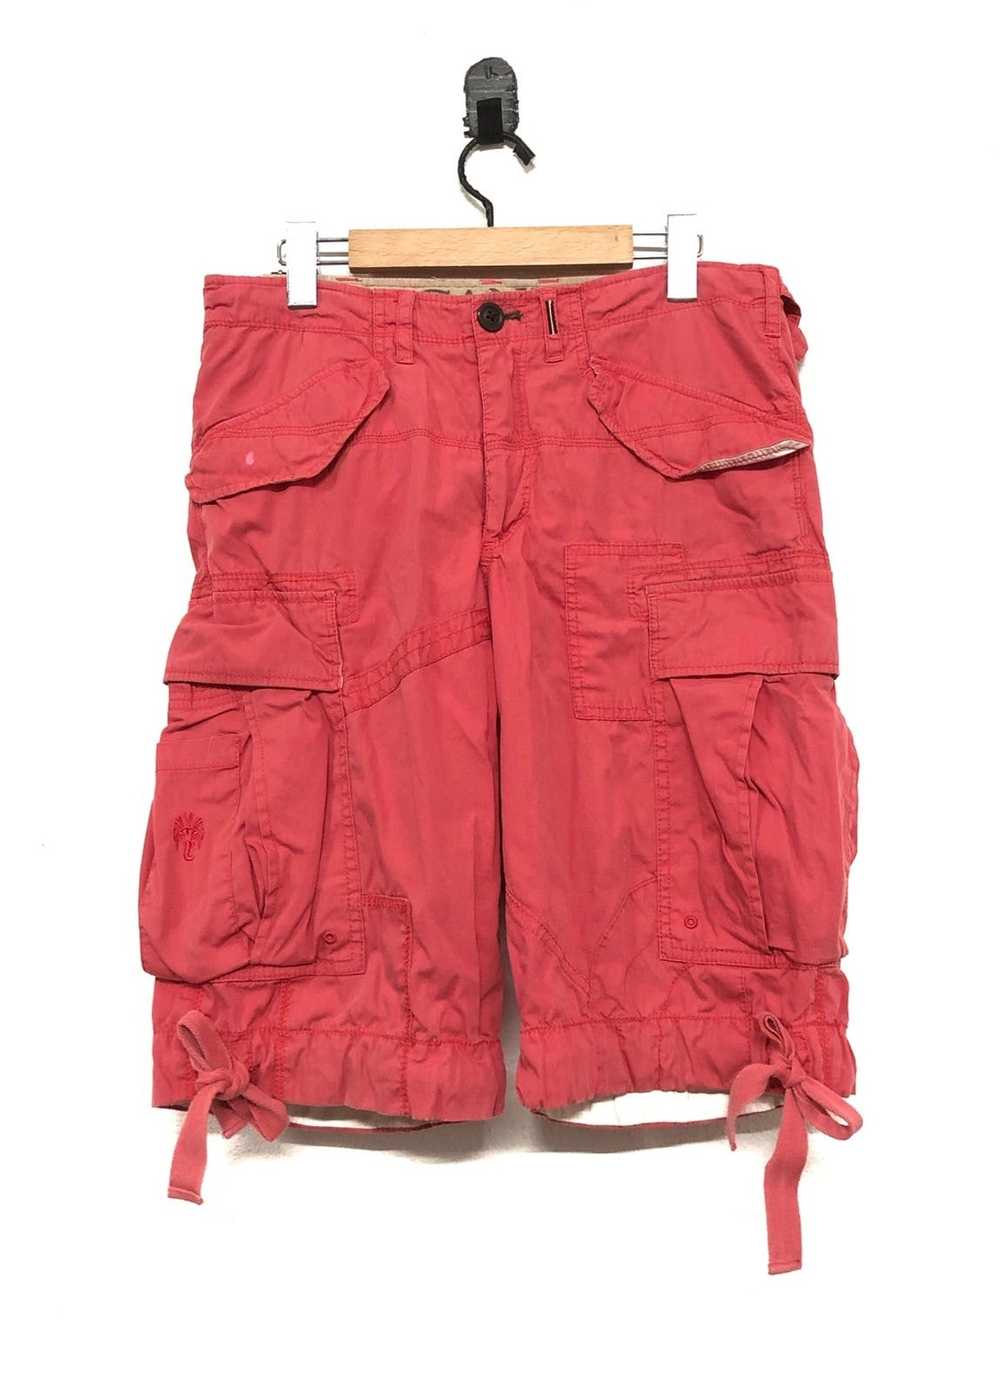 Japanese Brand Ganesh Cargo Shorts pant - image 1